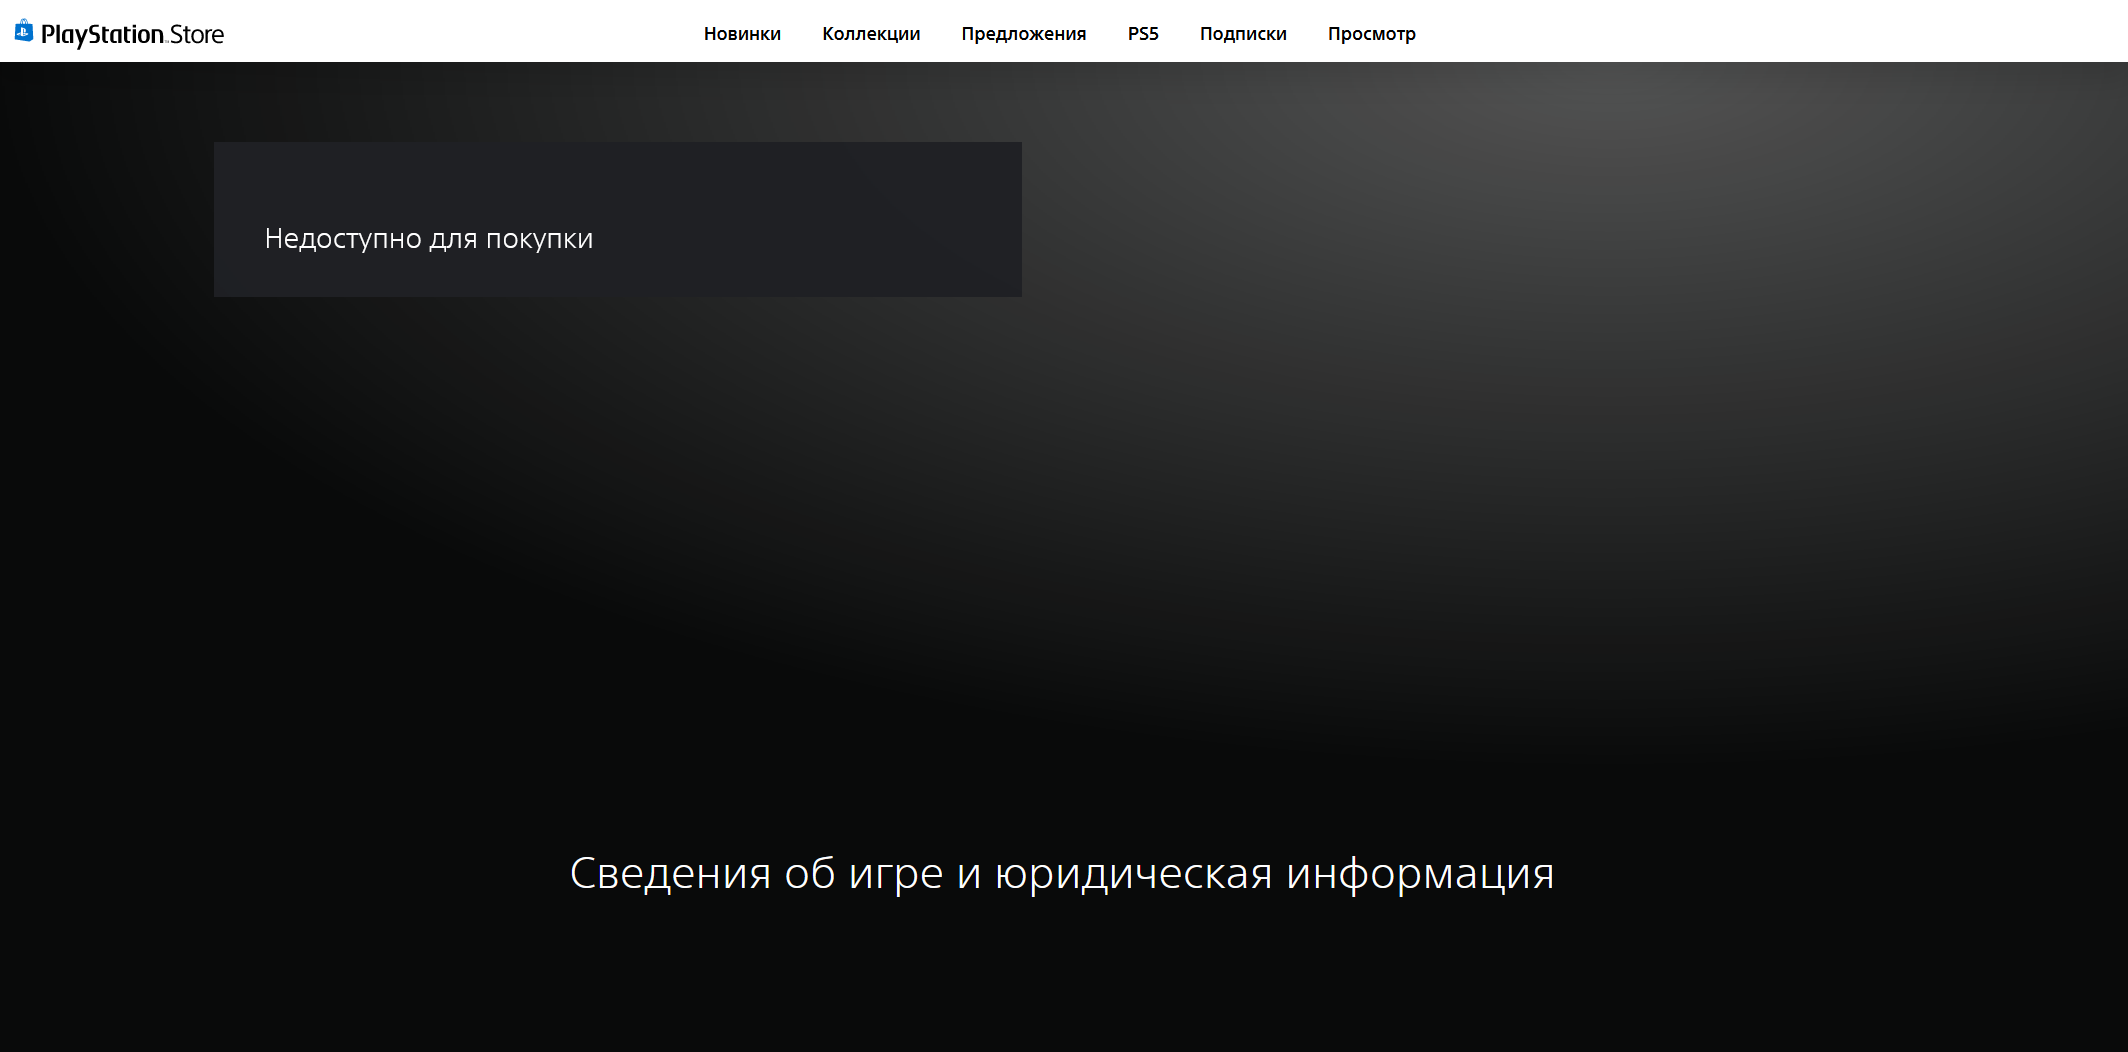 Для вашего региона просмотр недоступен. Отключение PS Store в России. Операции в ПС стор приостановлены.